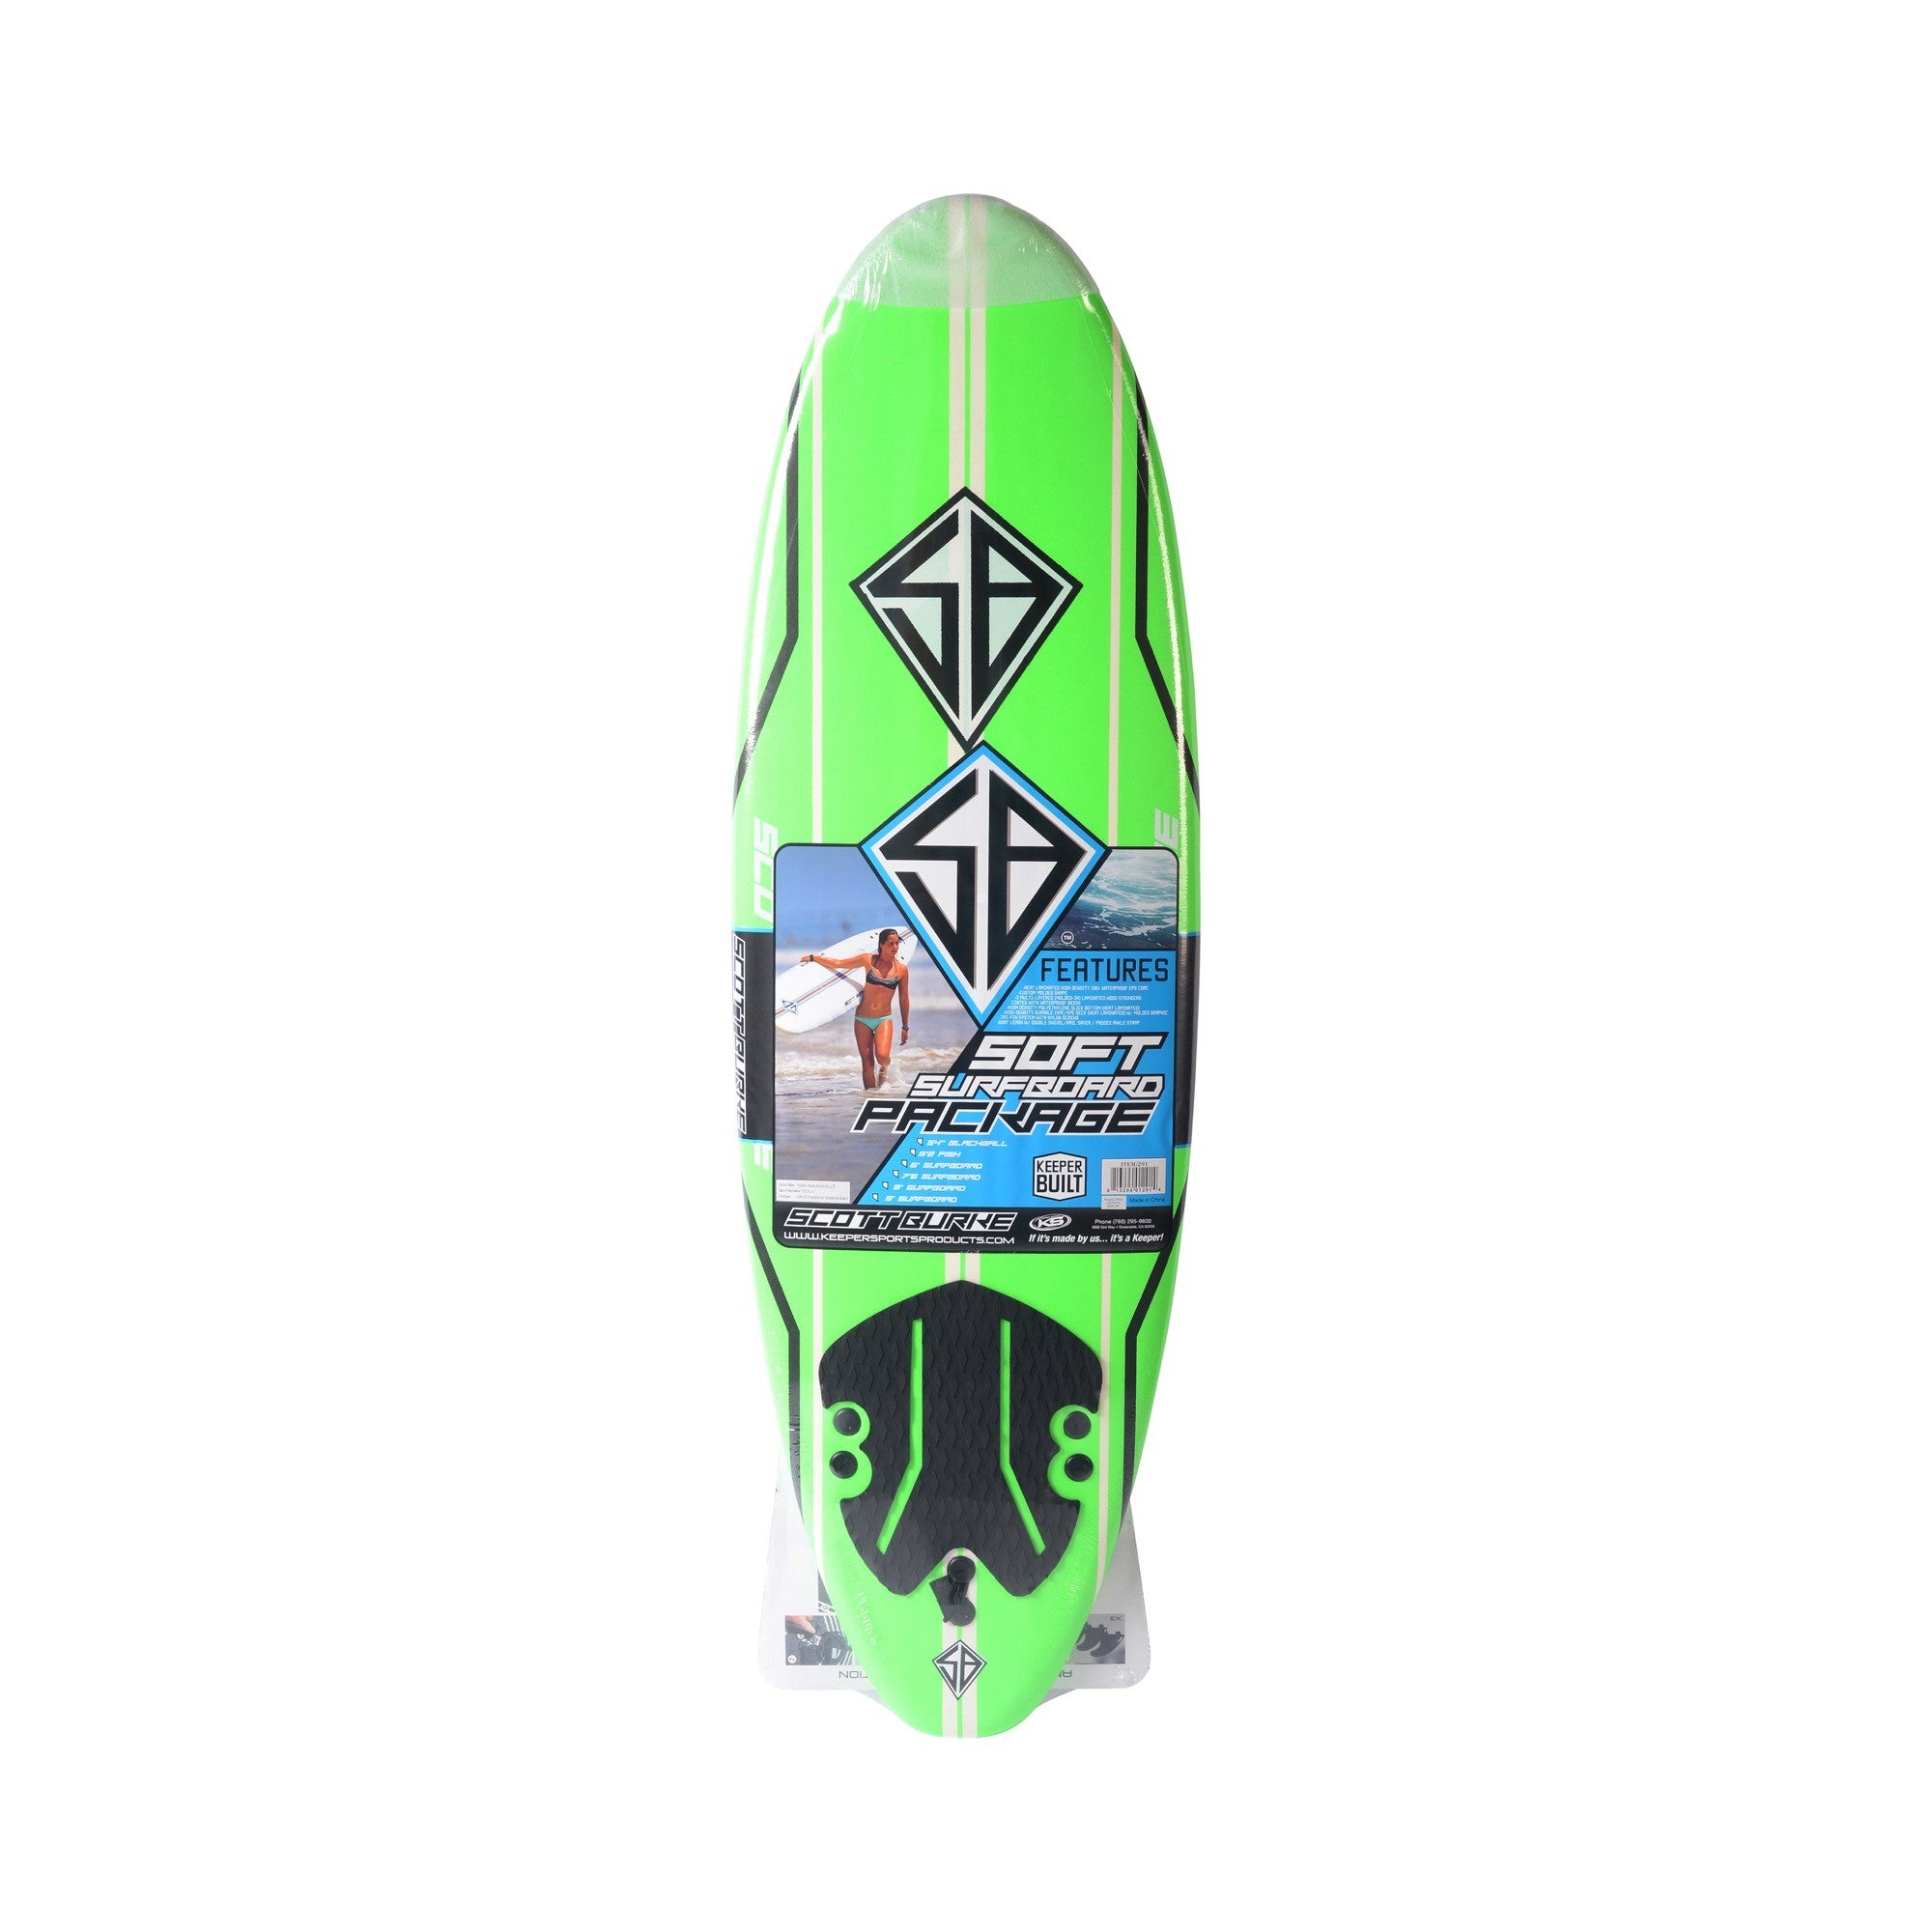 CBC - Foam Surfboard - Softboard 6'0 Scott Burke - Neon Green